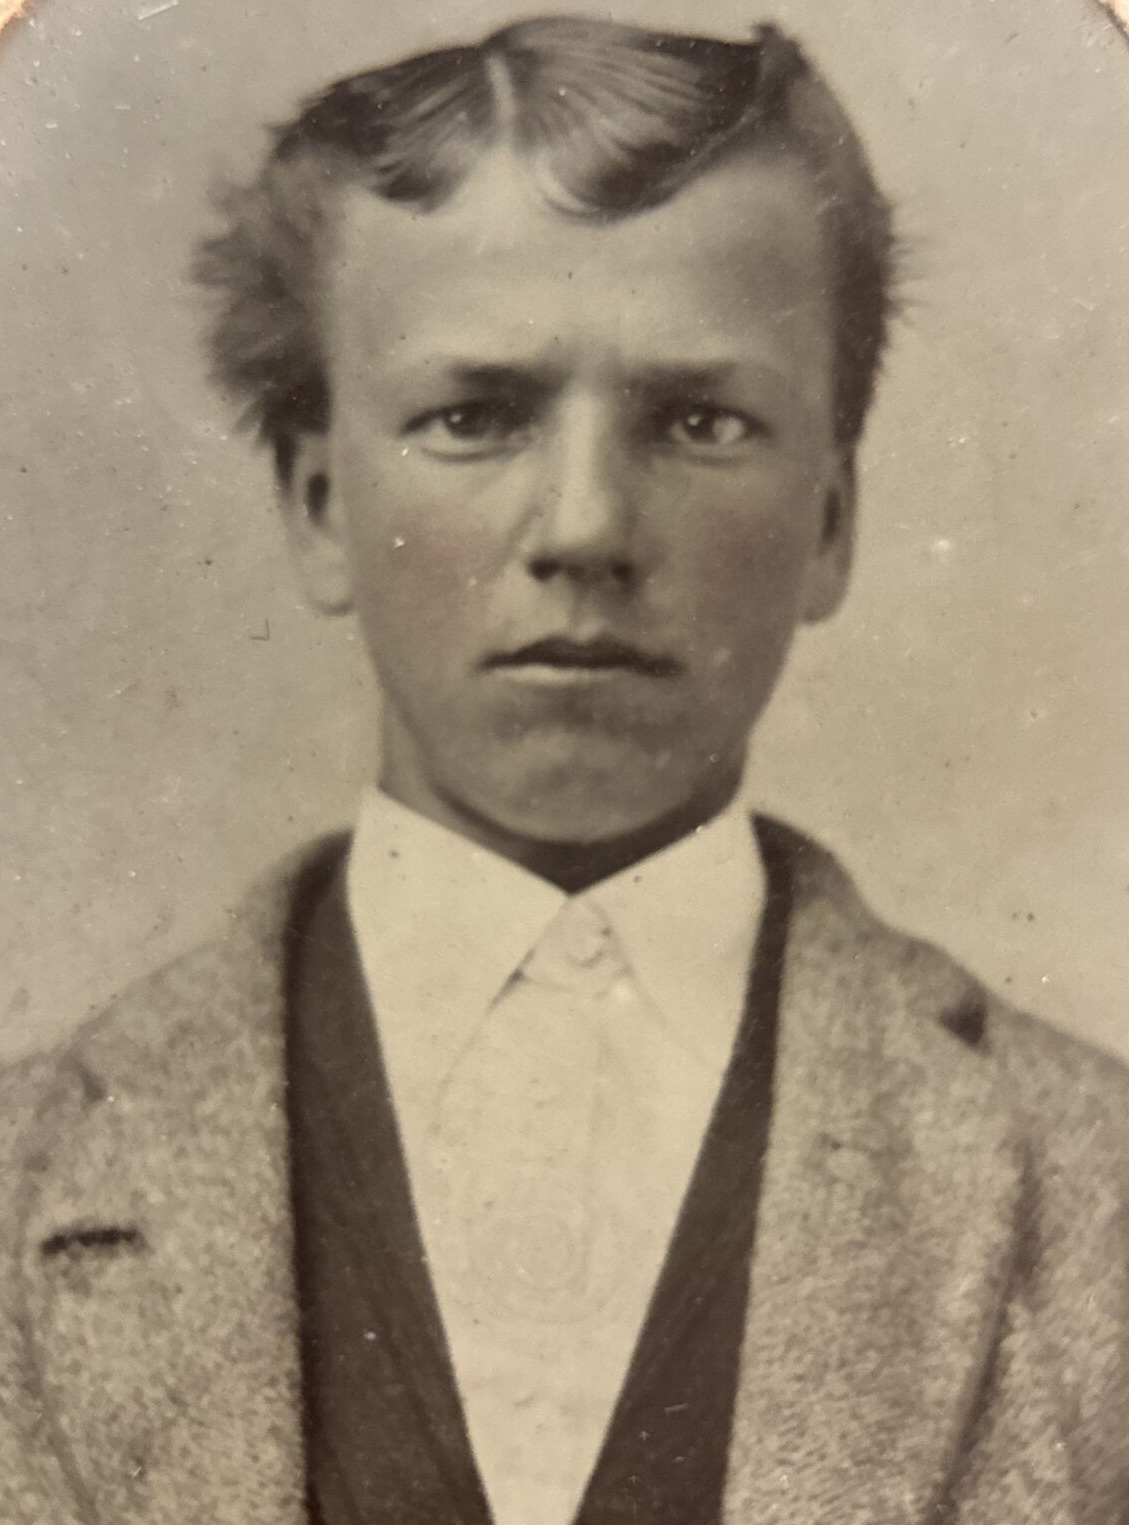 Tintype Photo of Young Man Civil War Era